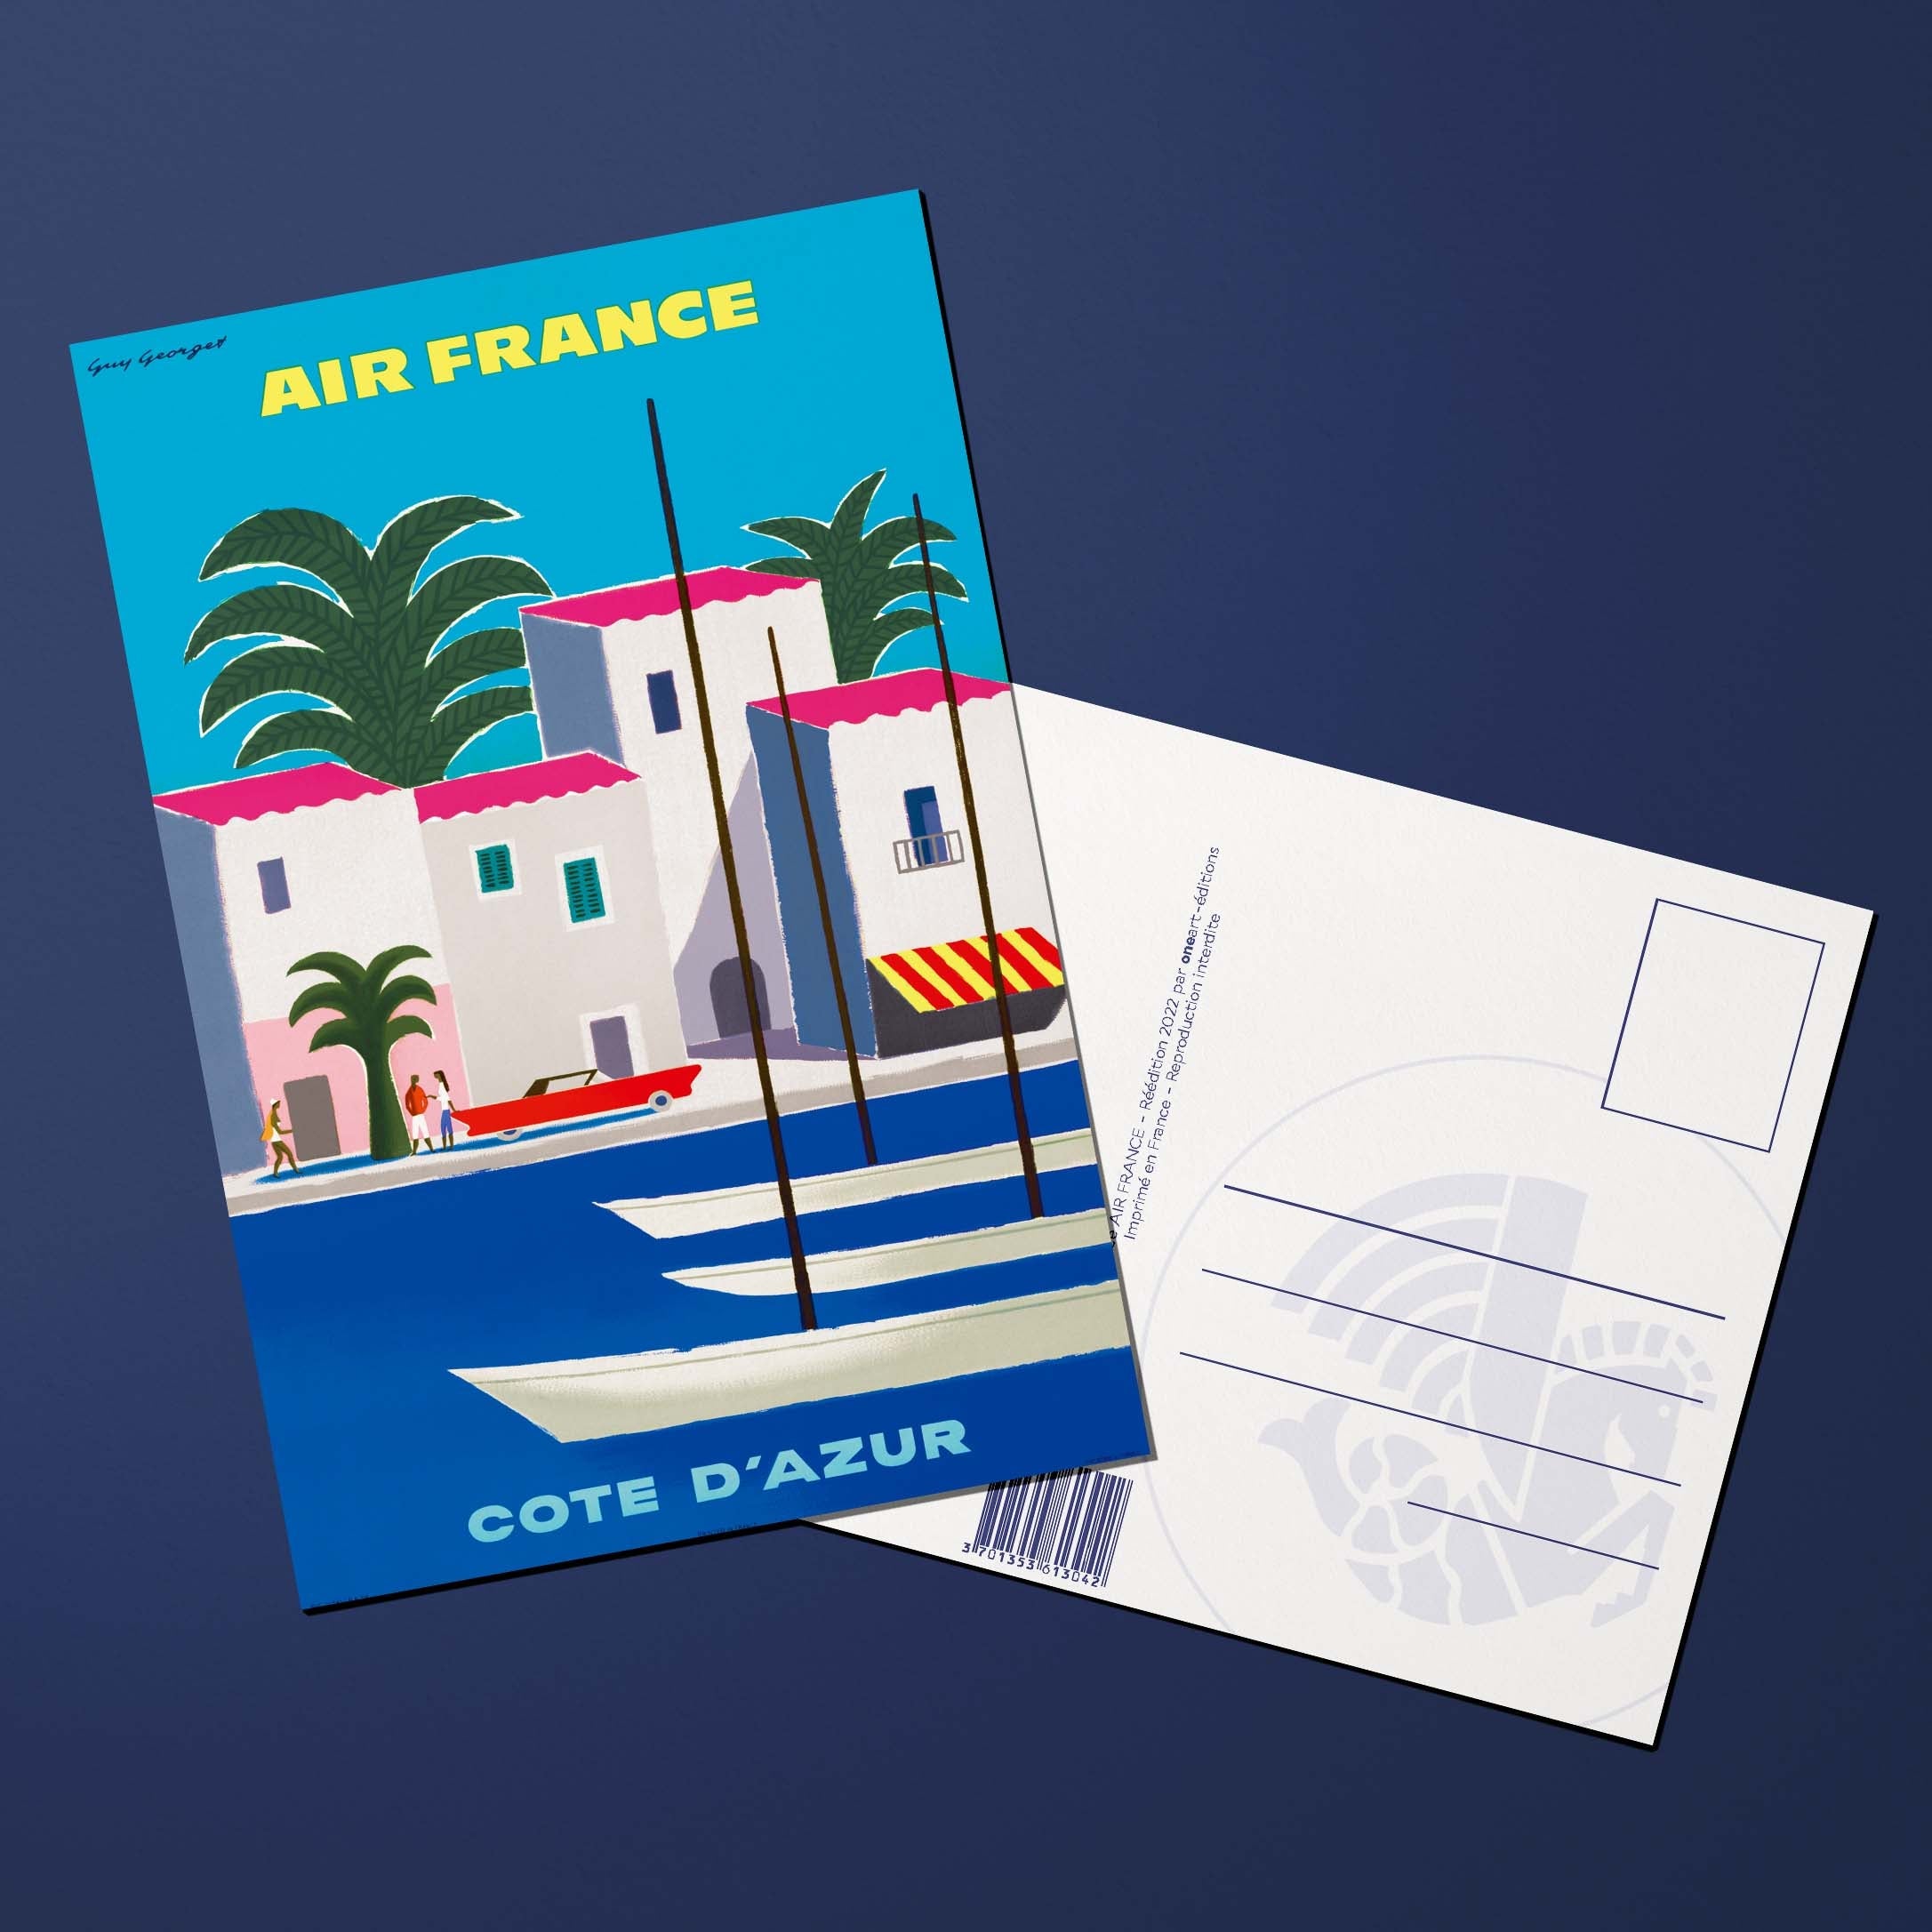 Postcard Air France Legend Côte d'Azur, port